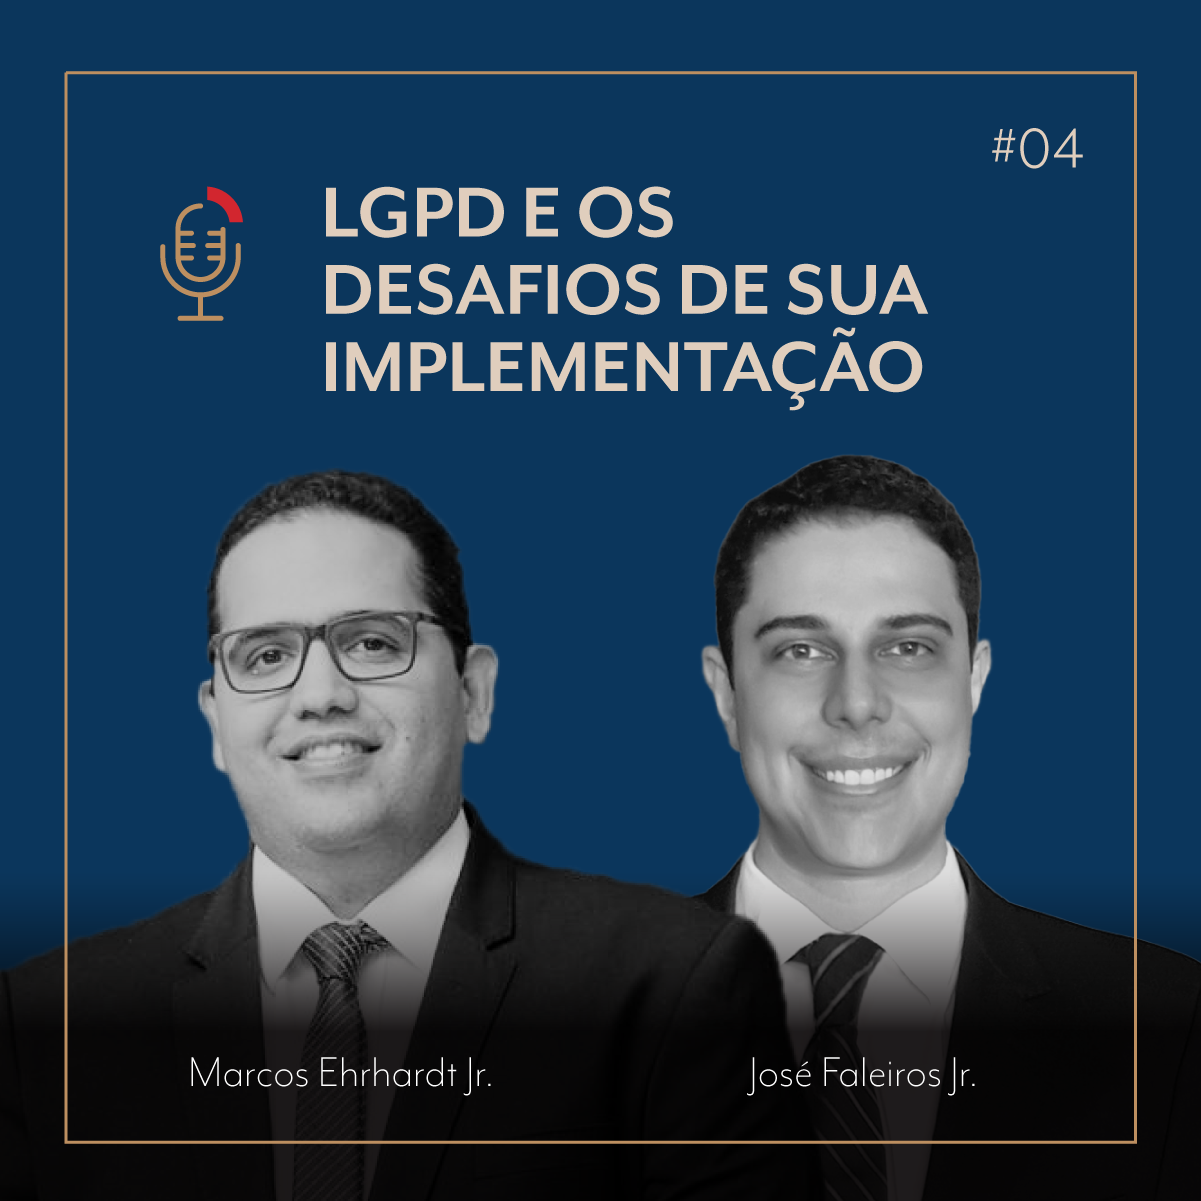 PODCAST | #04 LGPD e os desafios de sua implementação com Marcos Ehrhardt Jr. e José Faleiros Jr.